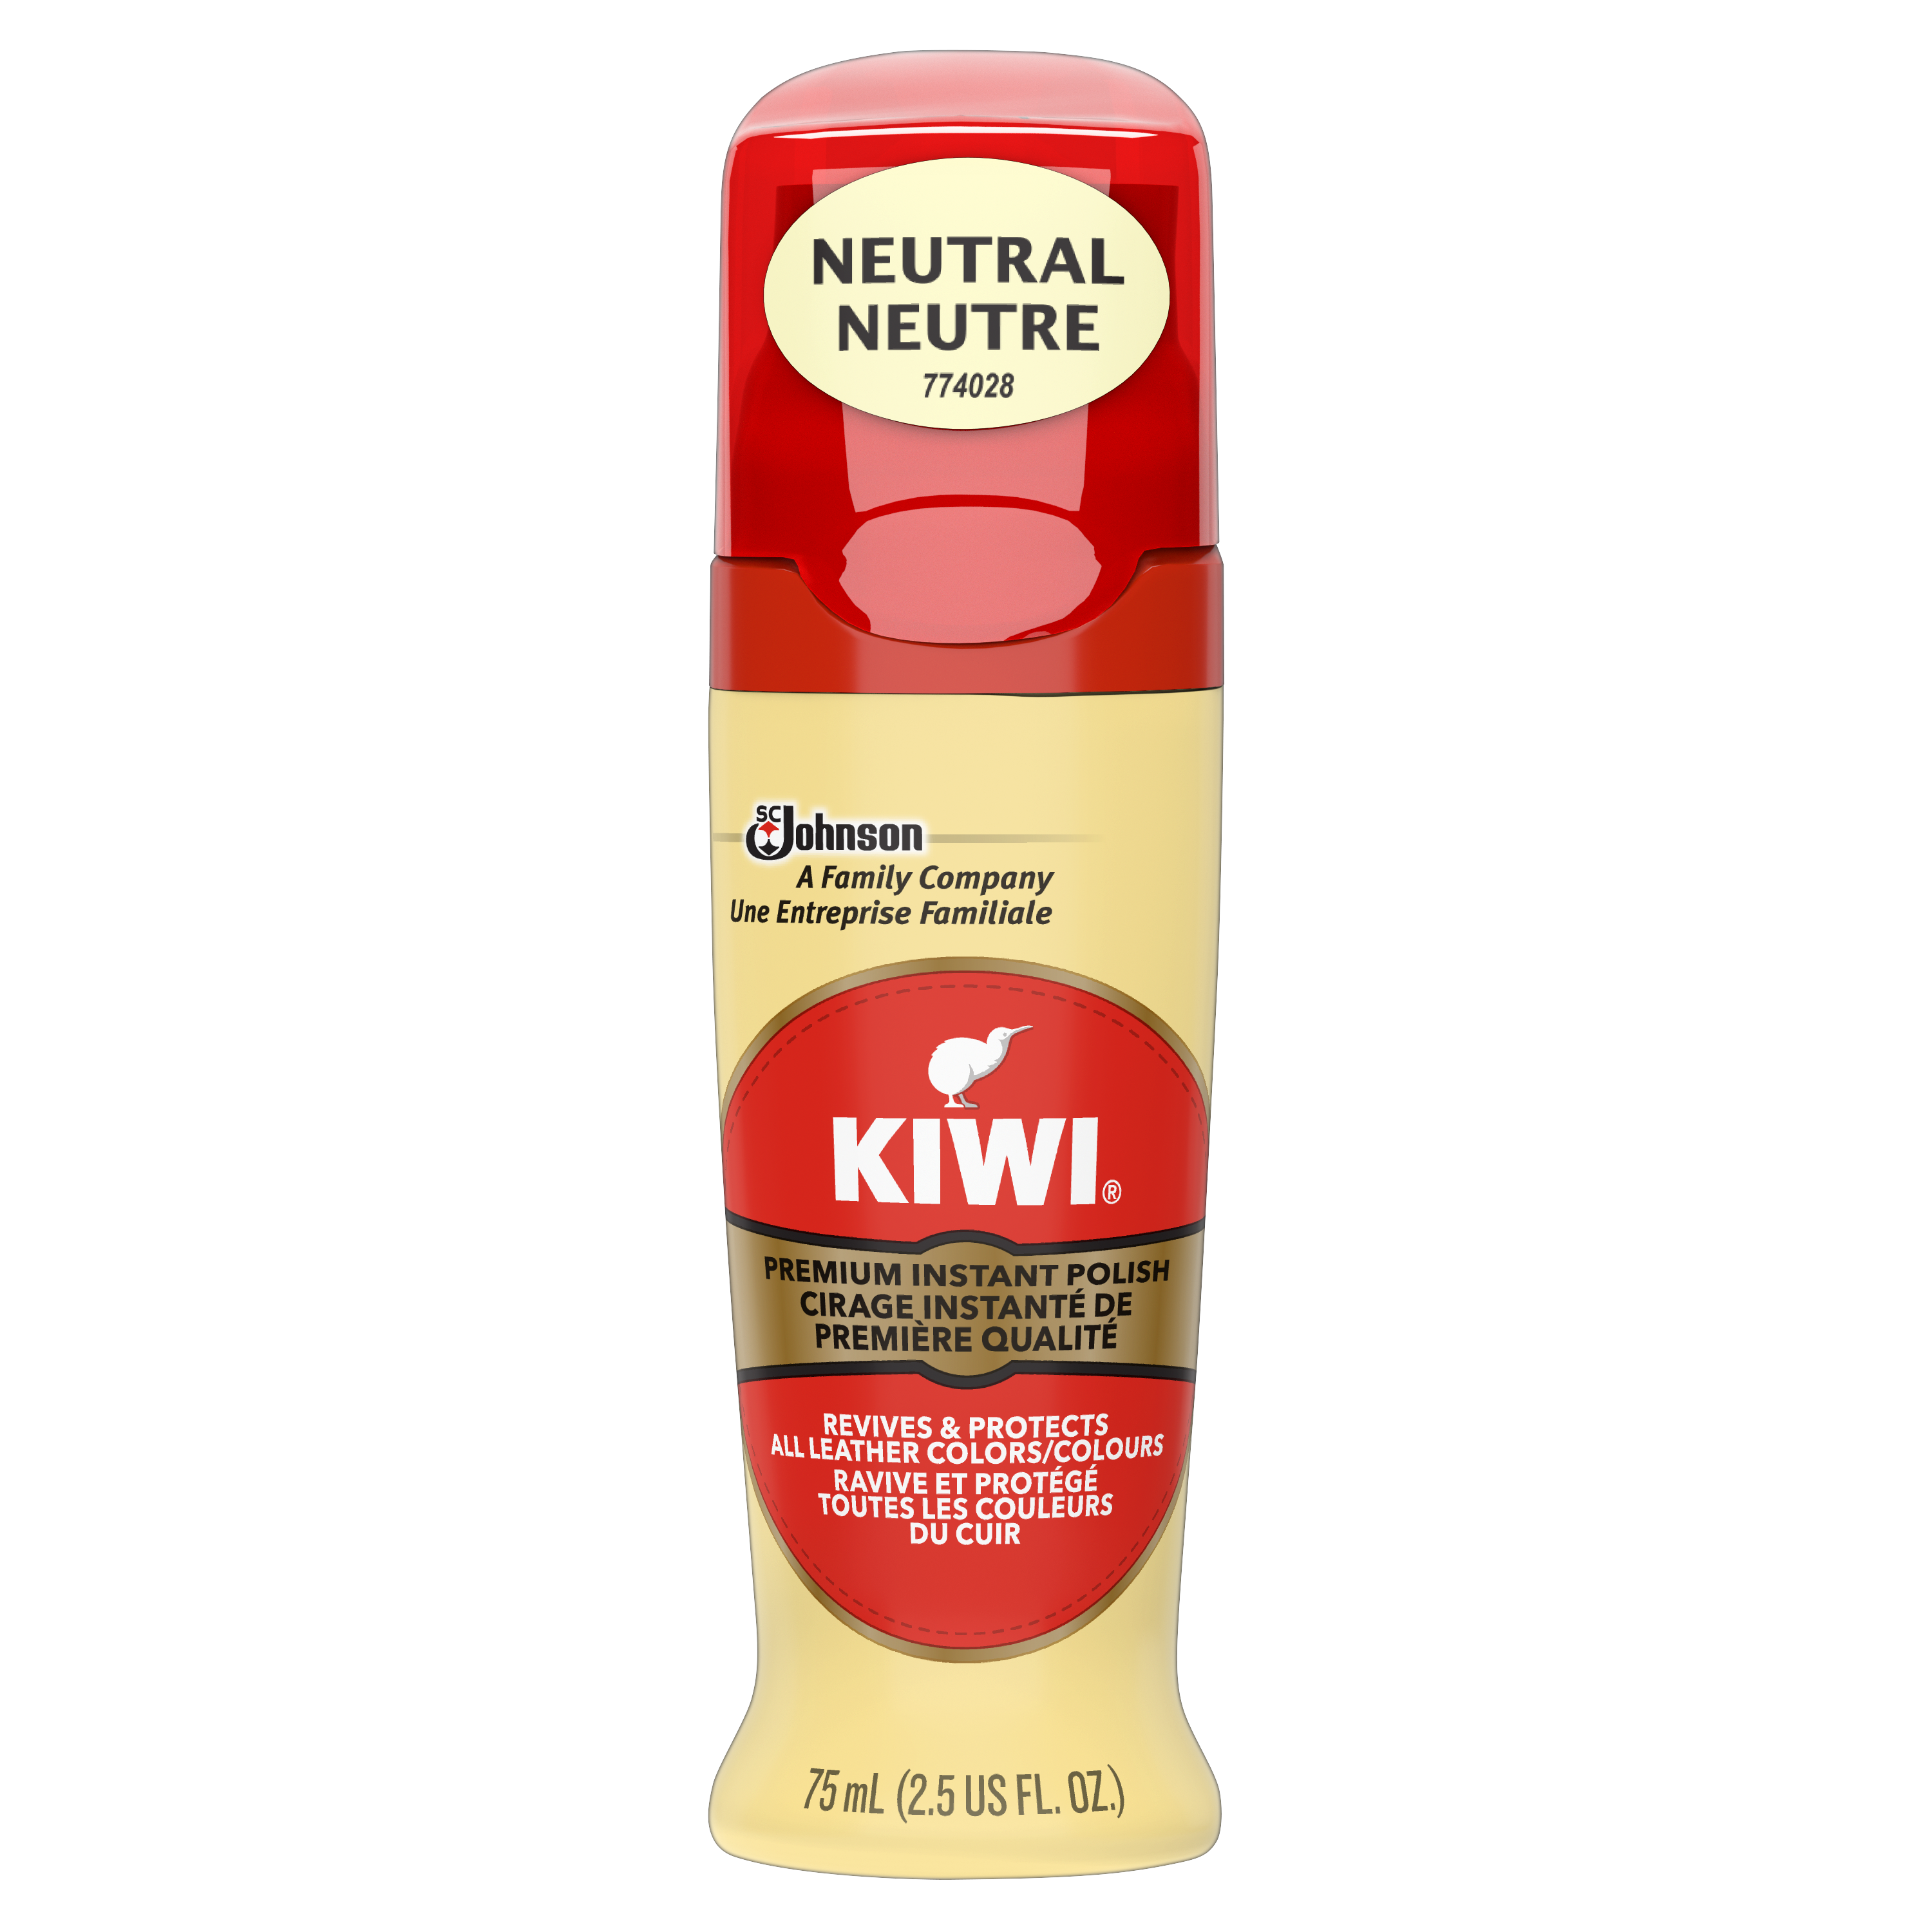 KIWI® Cirage Instanté de Première Qualité - Neutre